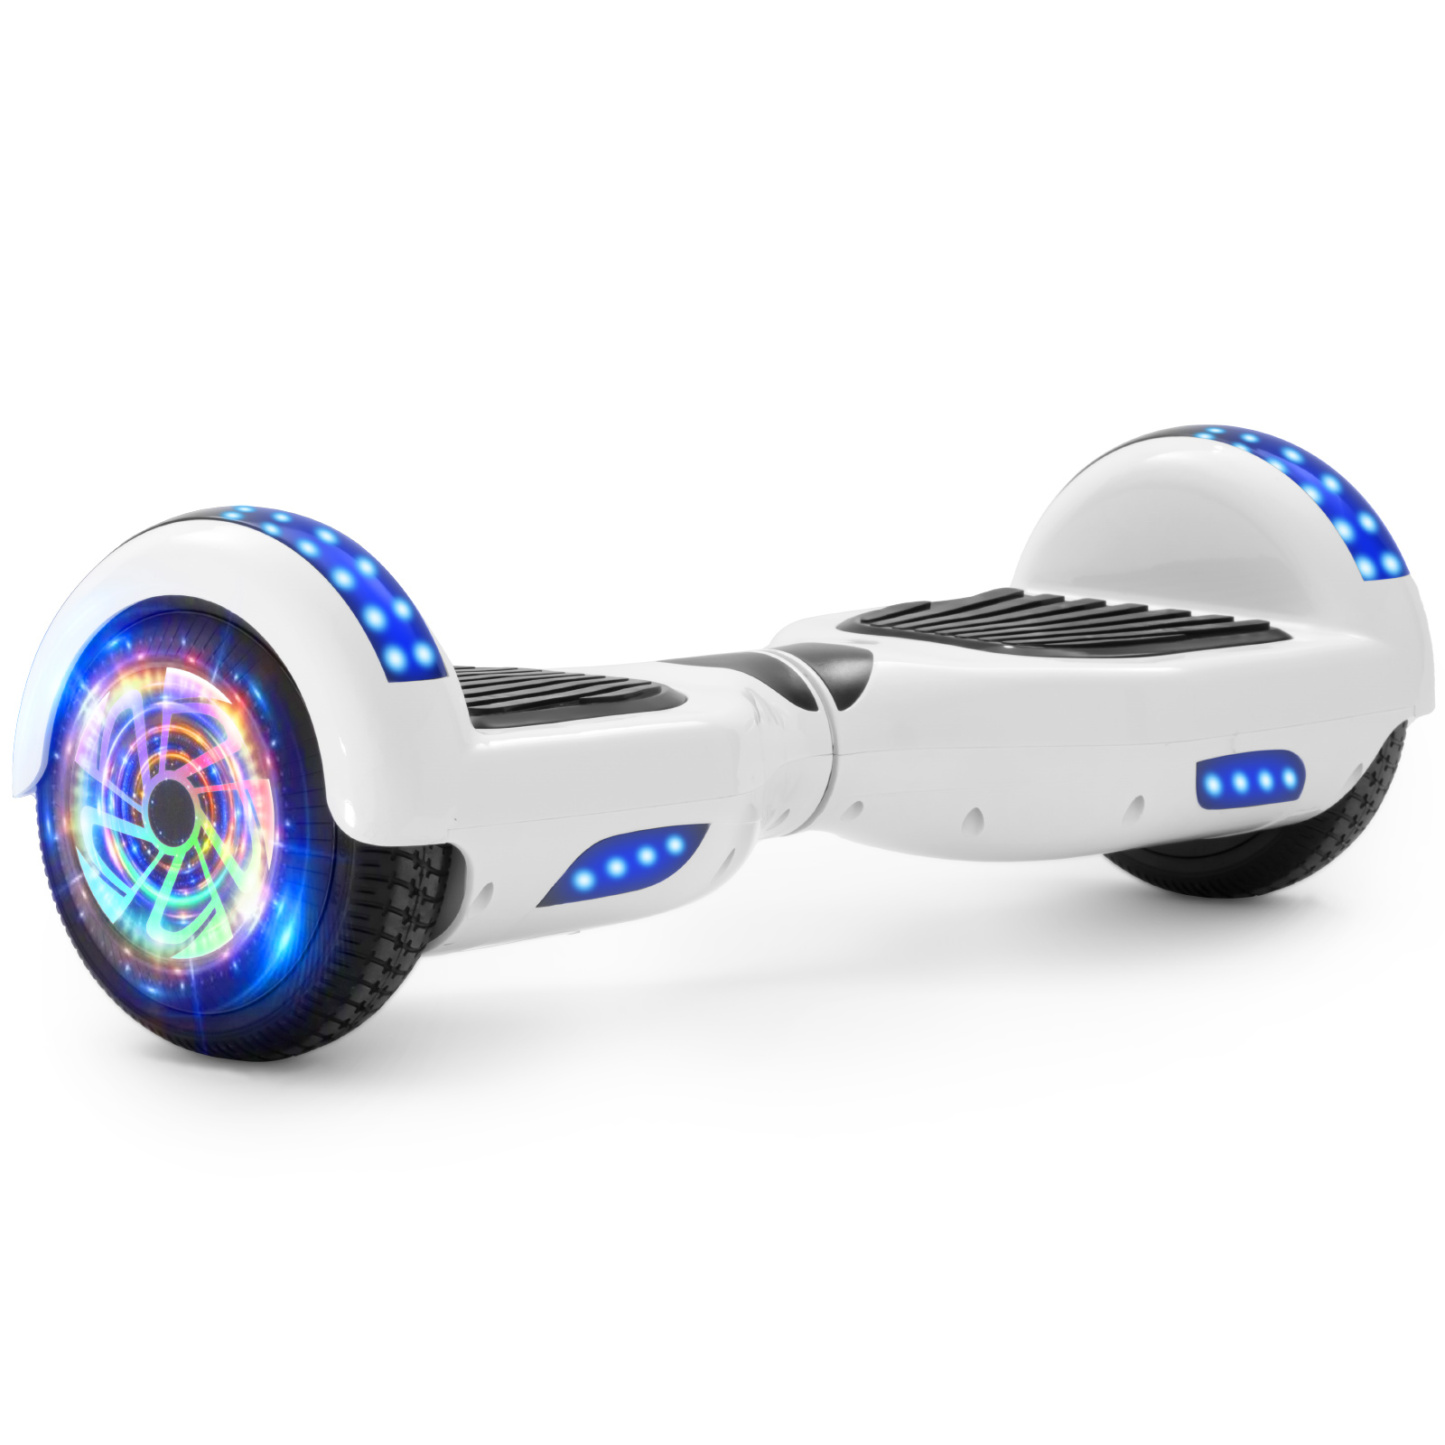 Neues 6,5" weißes Hoverboarde für Kinder, mit Bluetooth Musik Lautsprecher und Disco LED Licht - 500W 12km/h